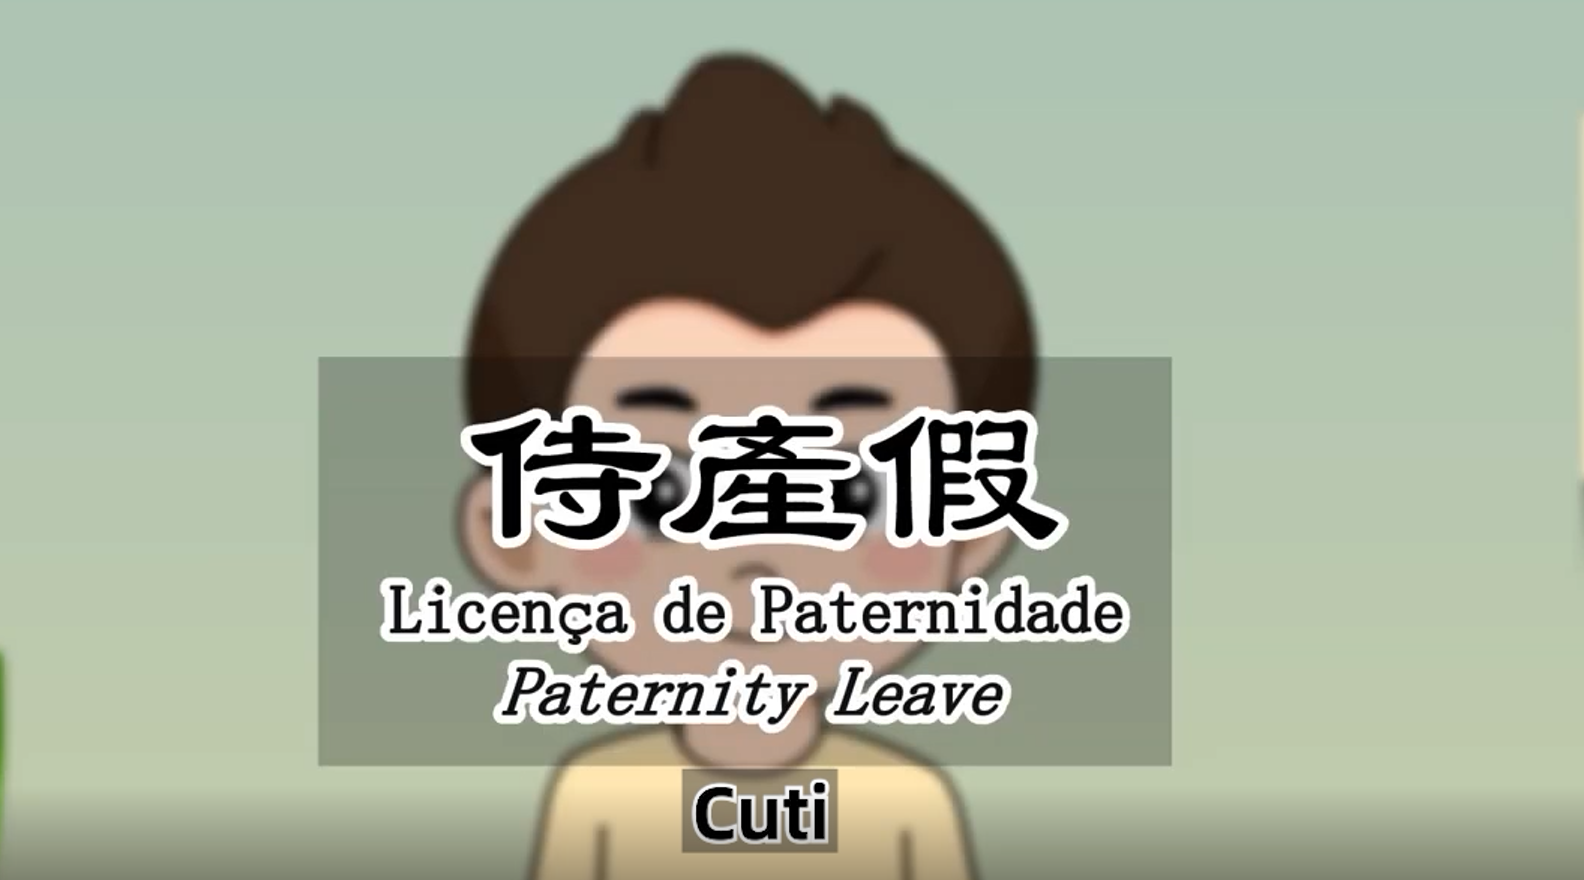 Cuti (paternity leave)